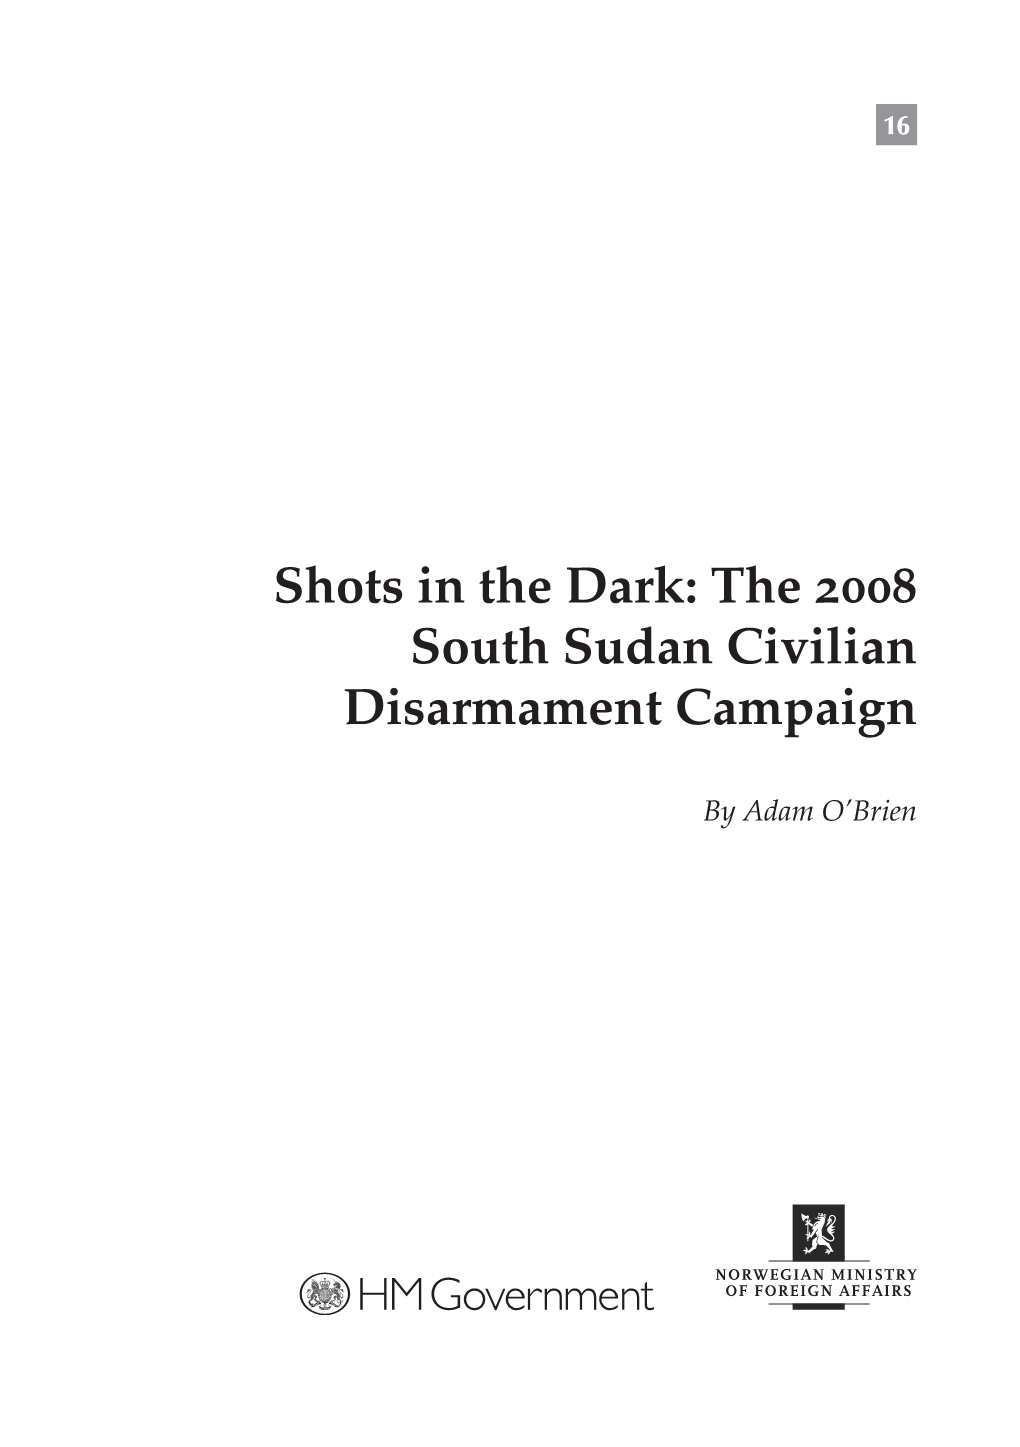 The 2008 South Sudan Civilian Disarmament Campaign